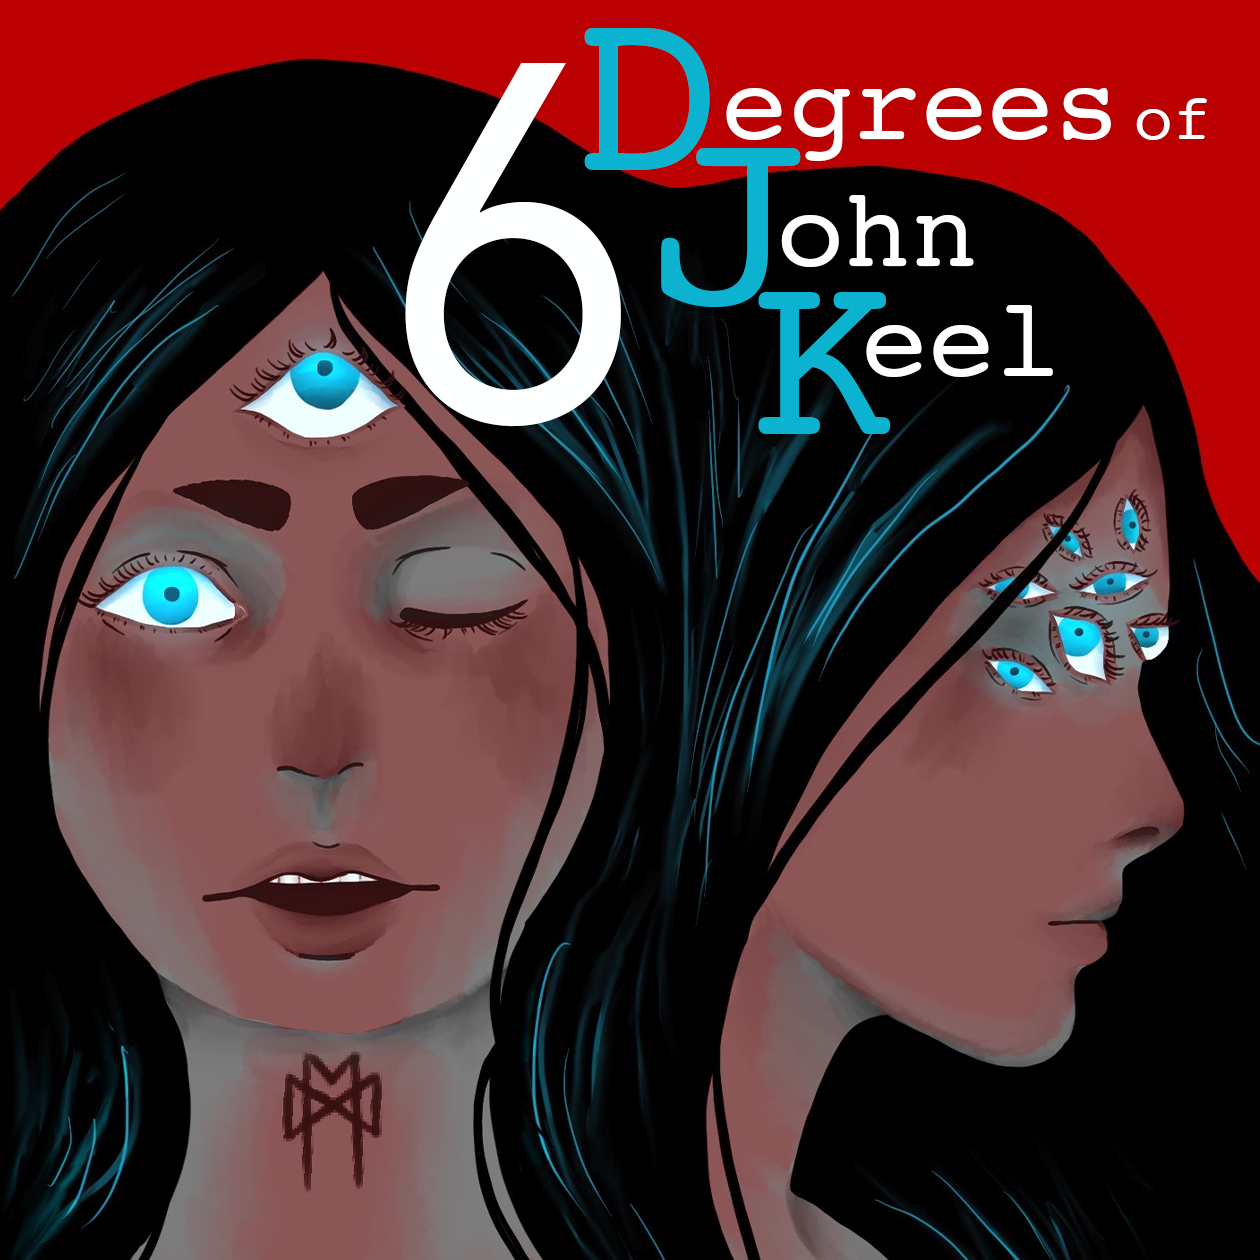 6 Degrees of John Keel